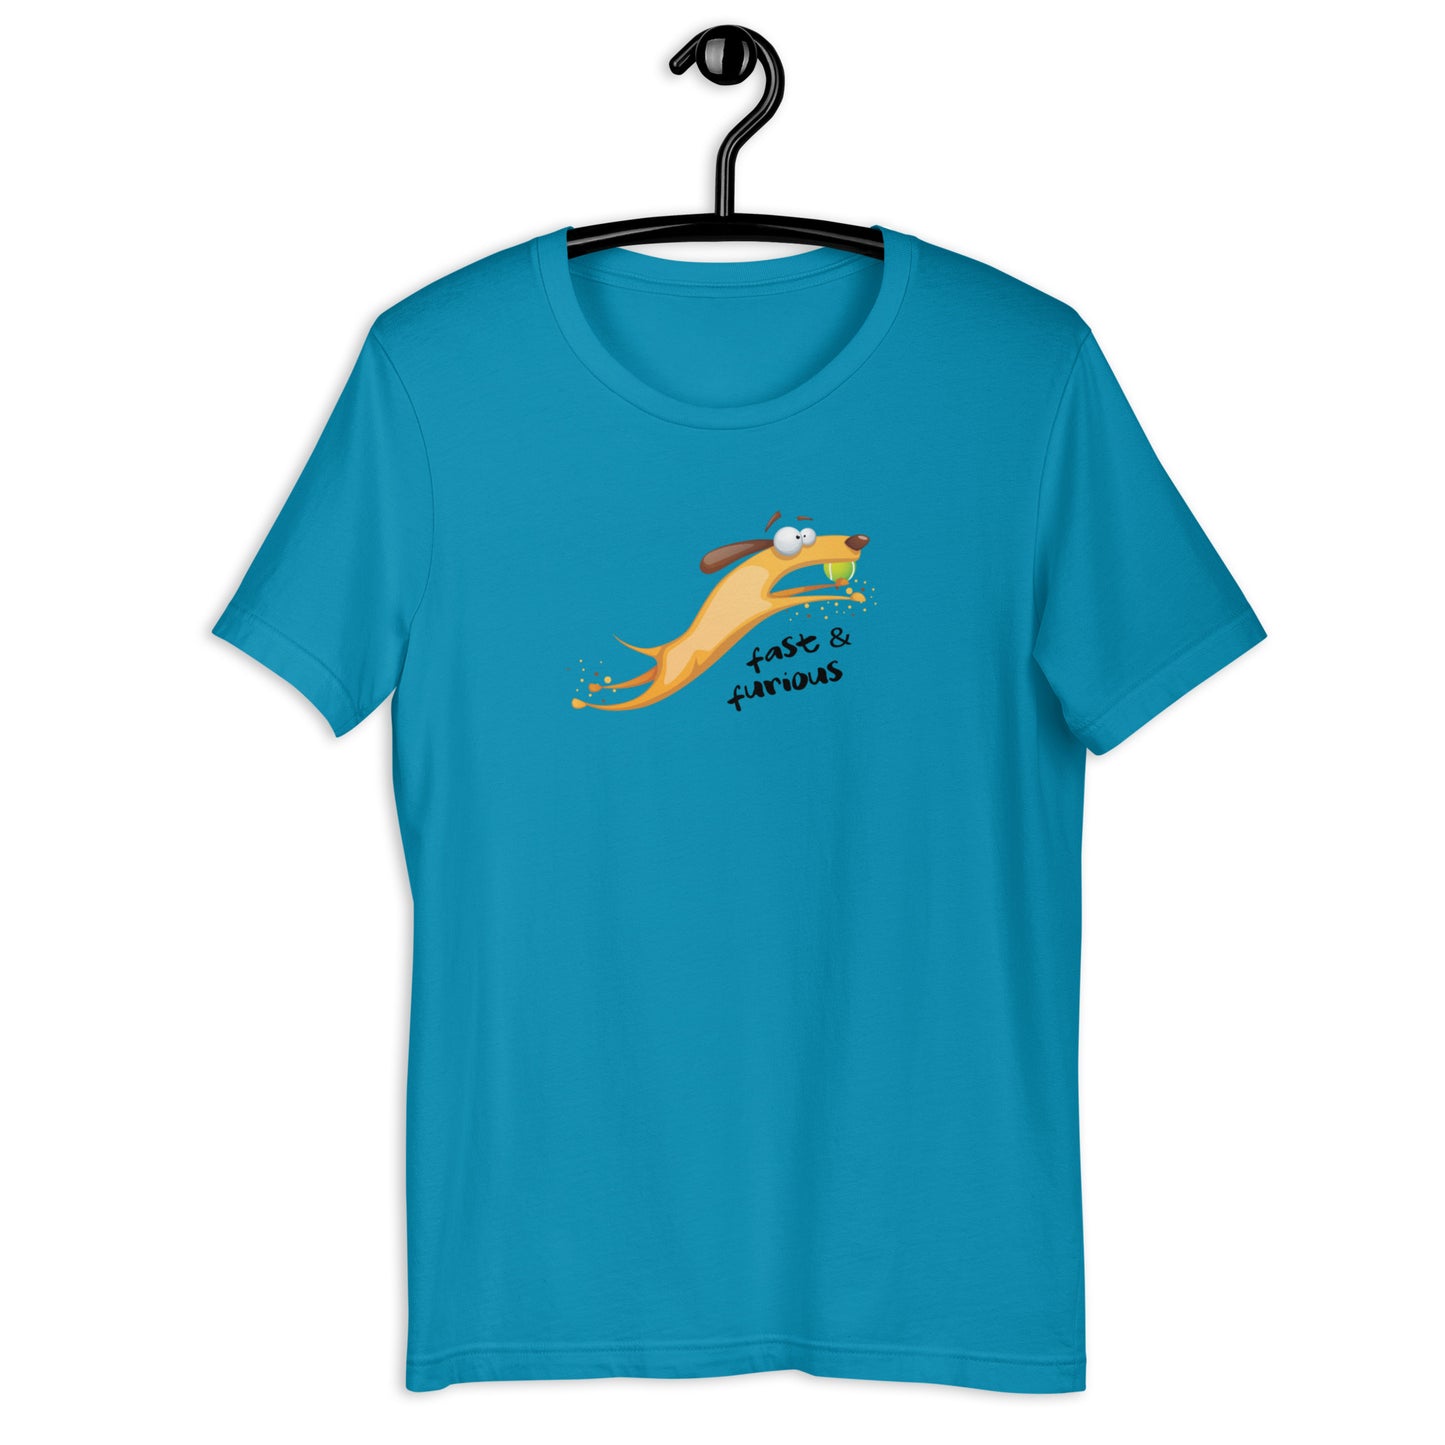 FLYBALL CARTOON - Unisex t-shirt